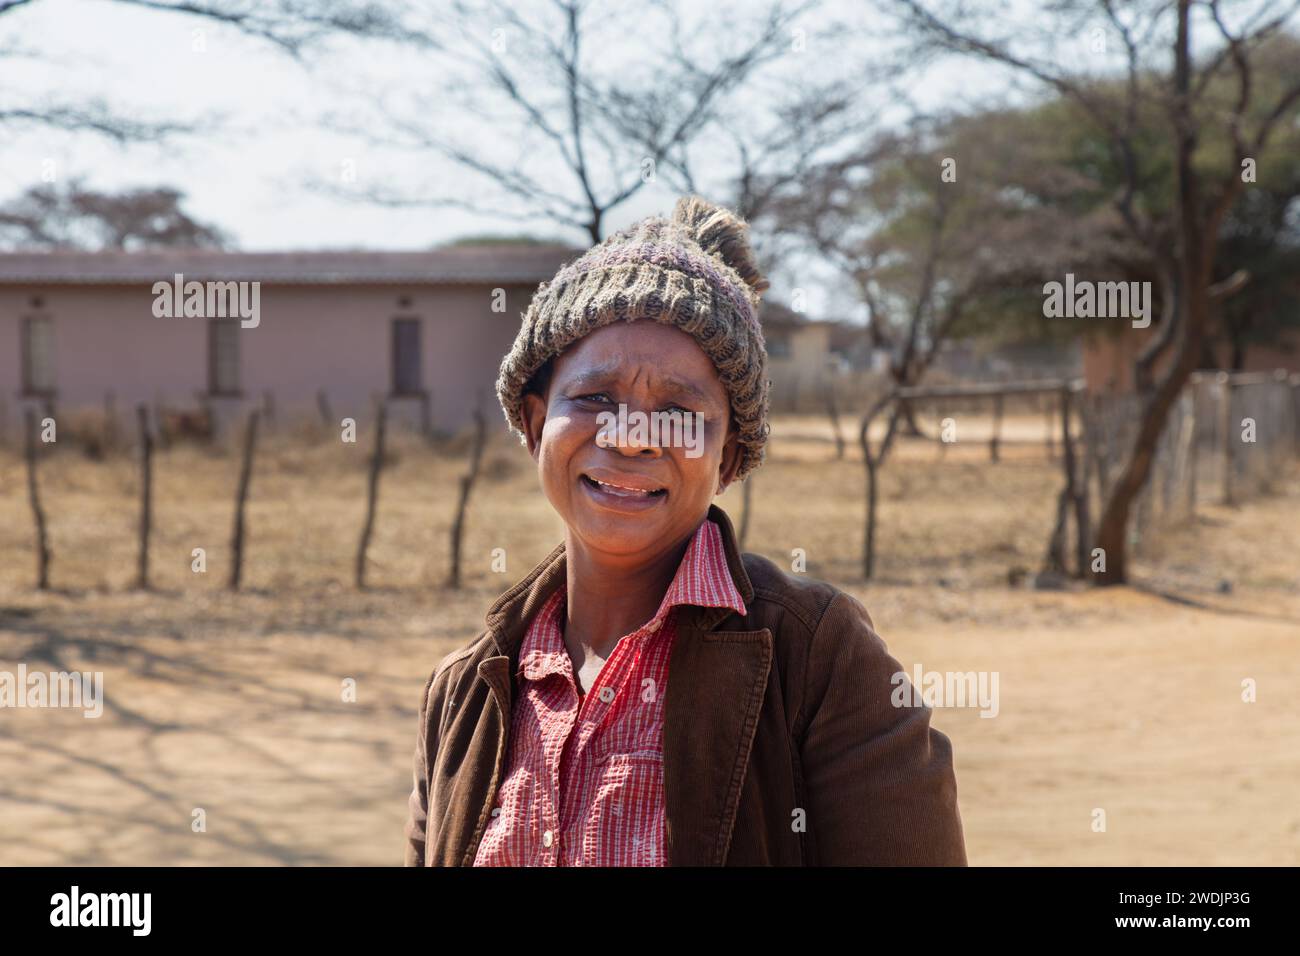 village souriant travailleur social africain femme adulte avec un bonnet marchant sur un chemin de terre Banque D'Images